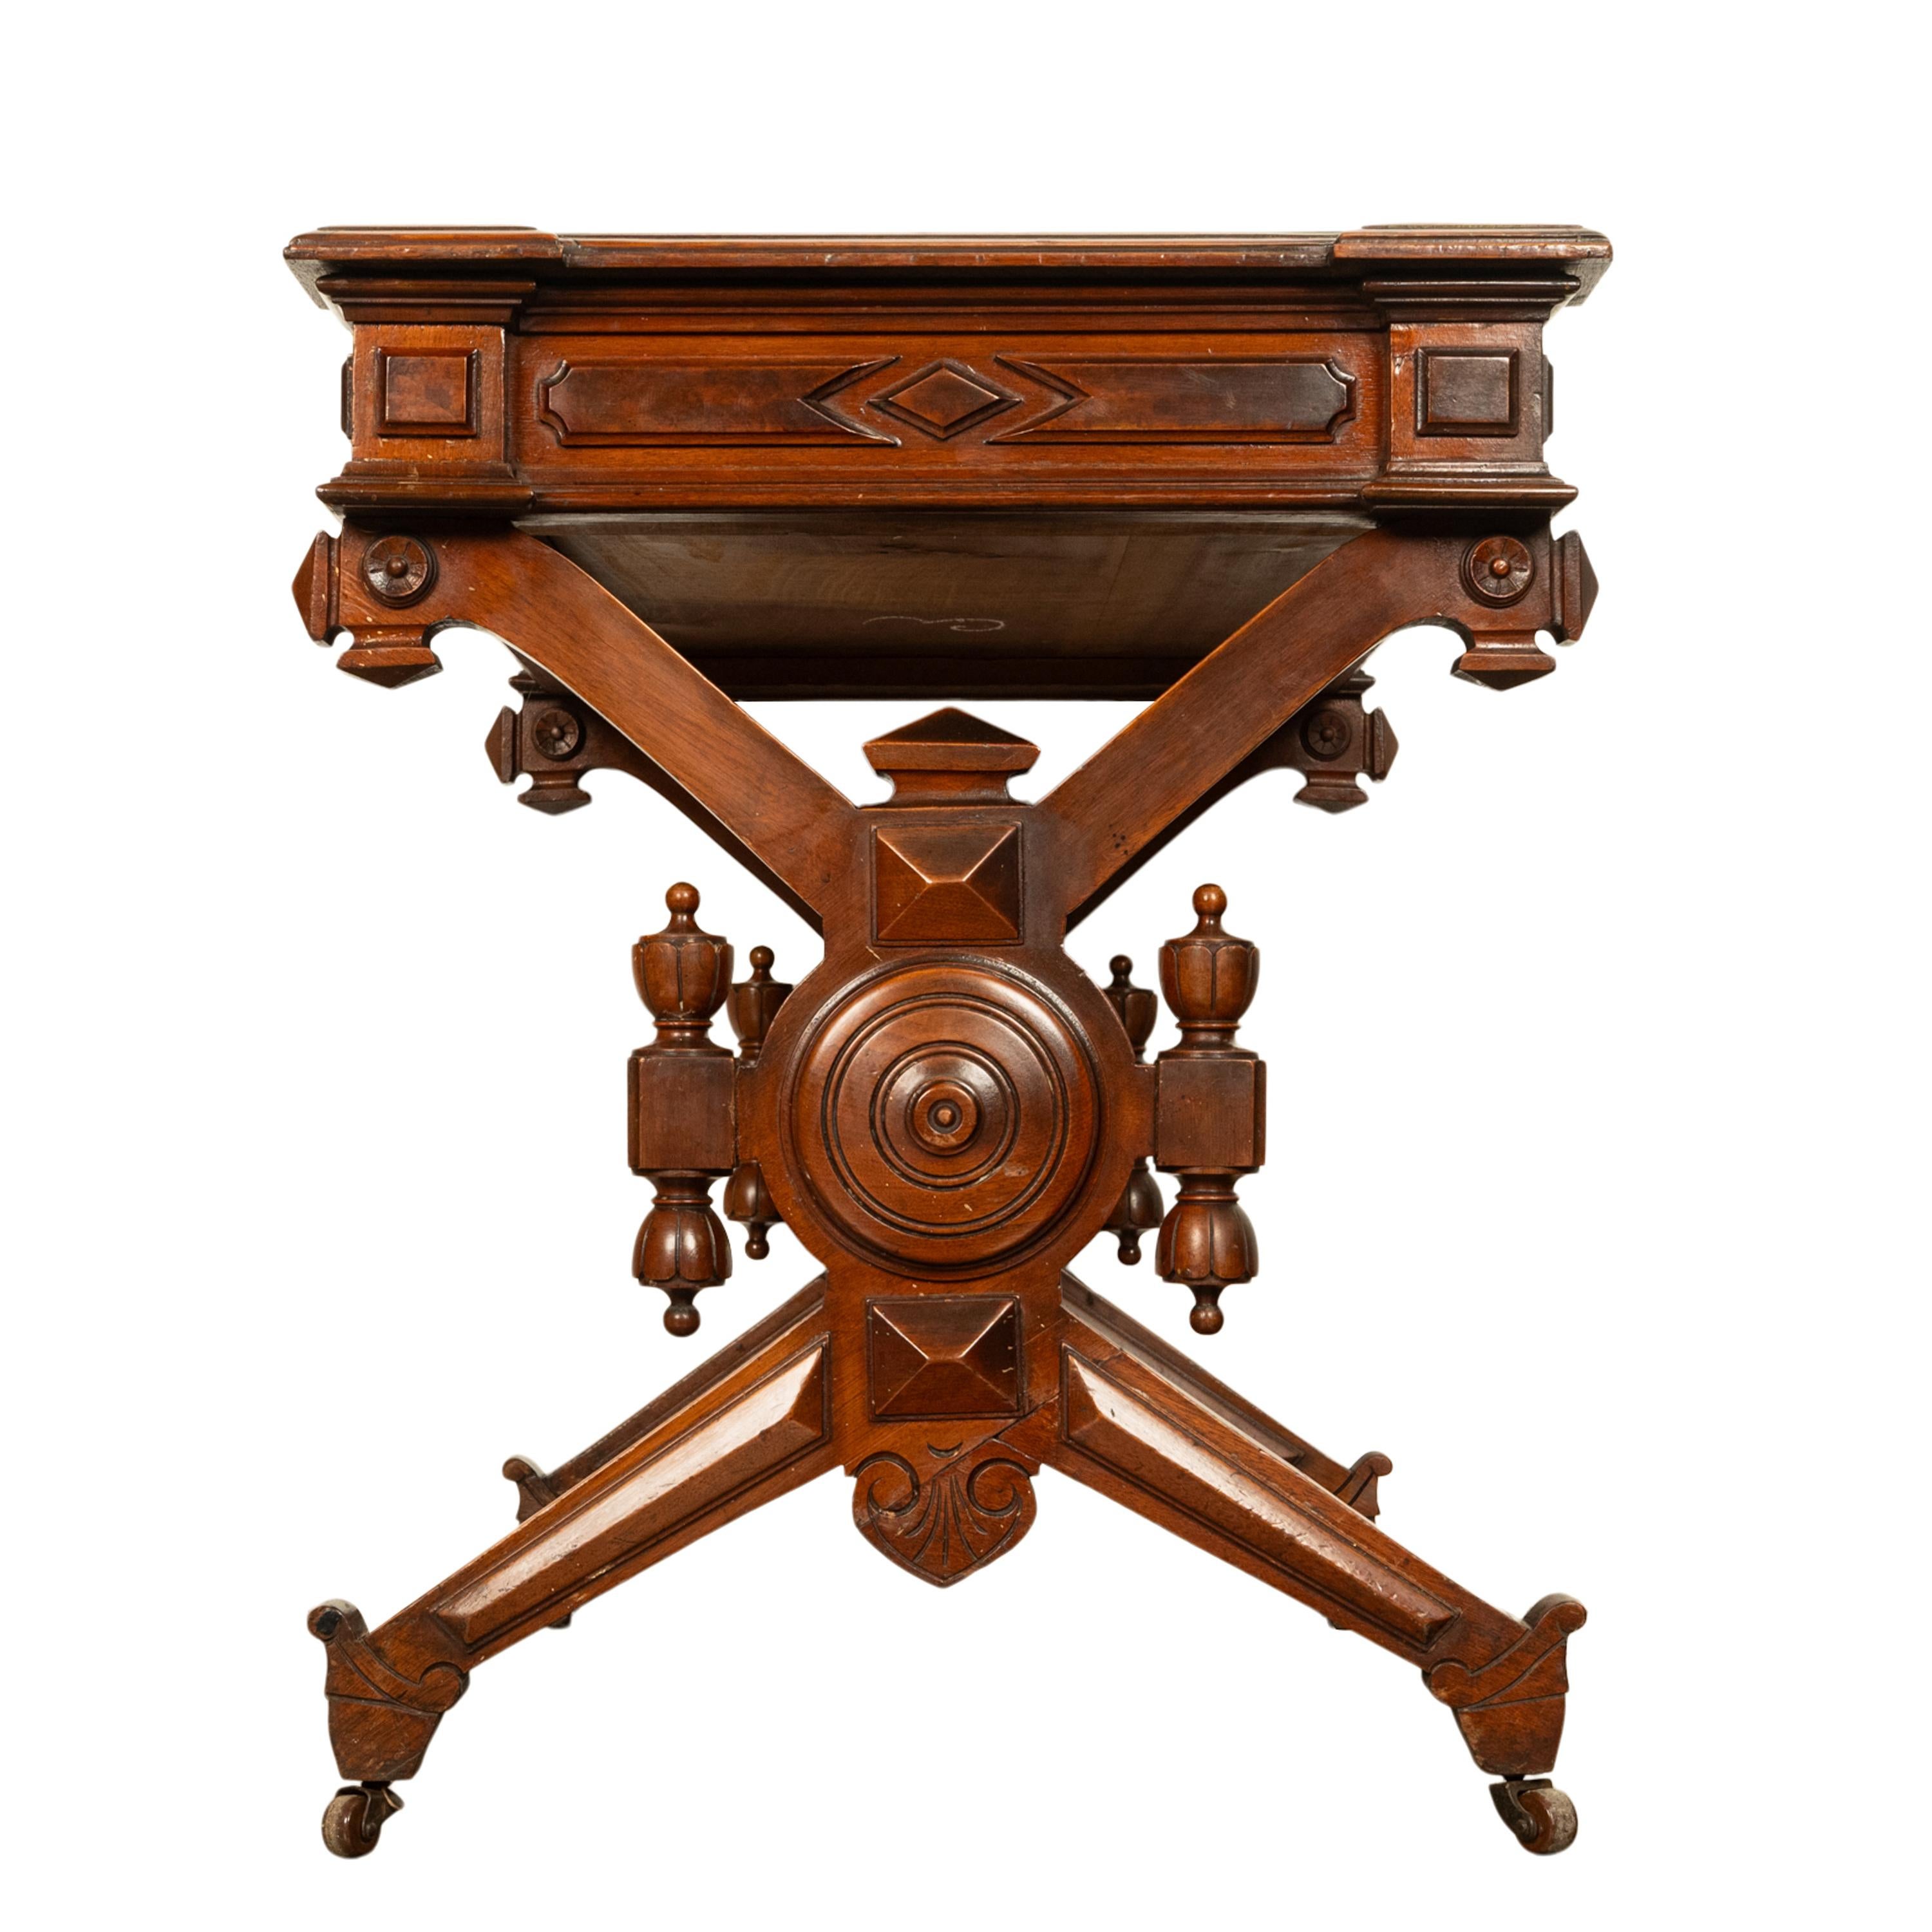 Antique American Walnut Renaissance Revival Aesthetic Movement Desk Table 1875 For Sale 6